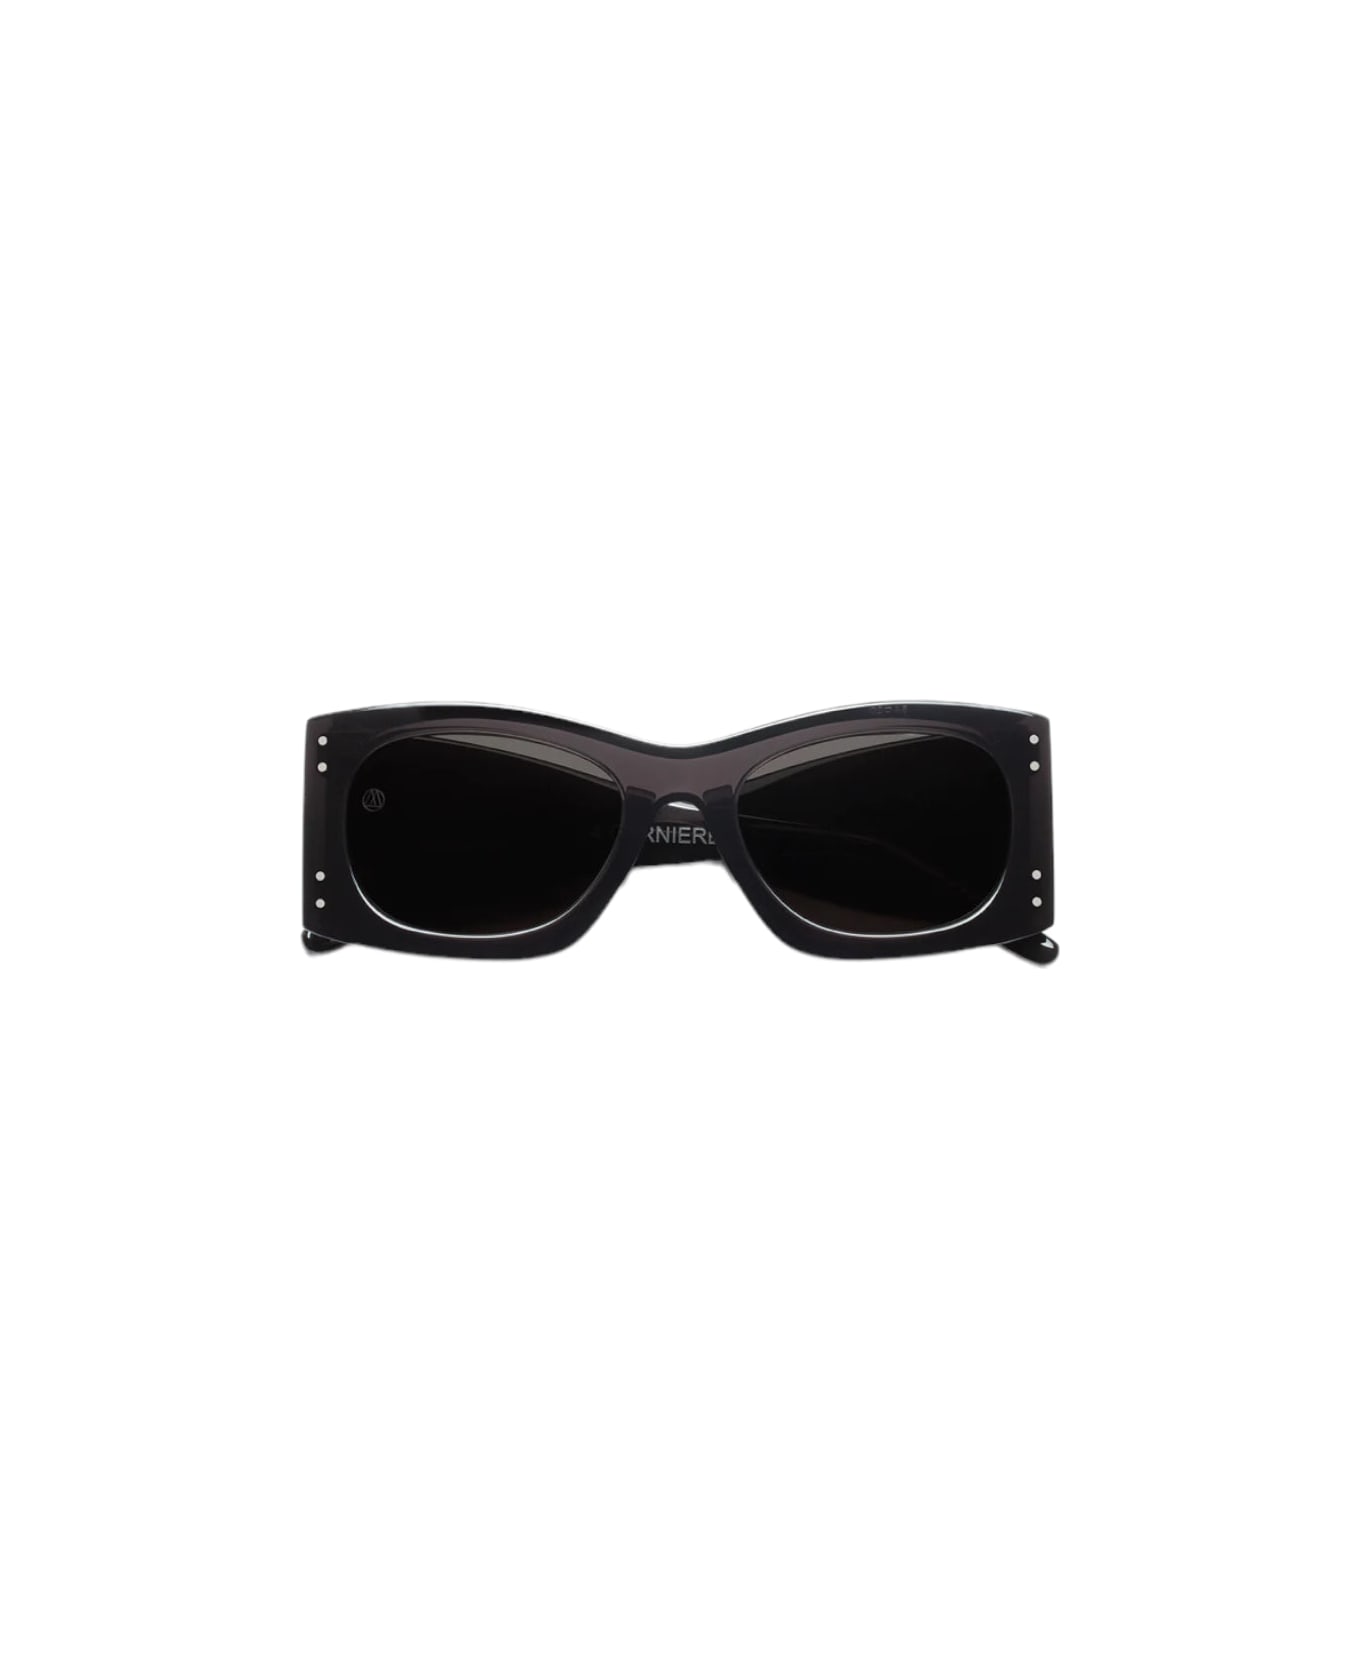 RETROSUPERFUTURE 4 Cerniere - Limited Edition - Black Sunglasses